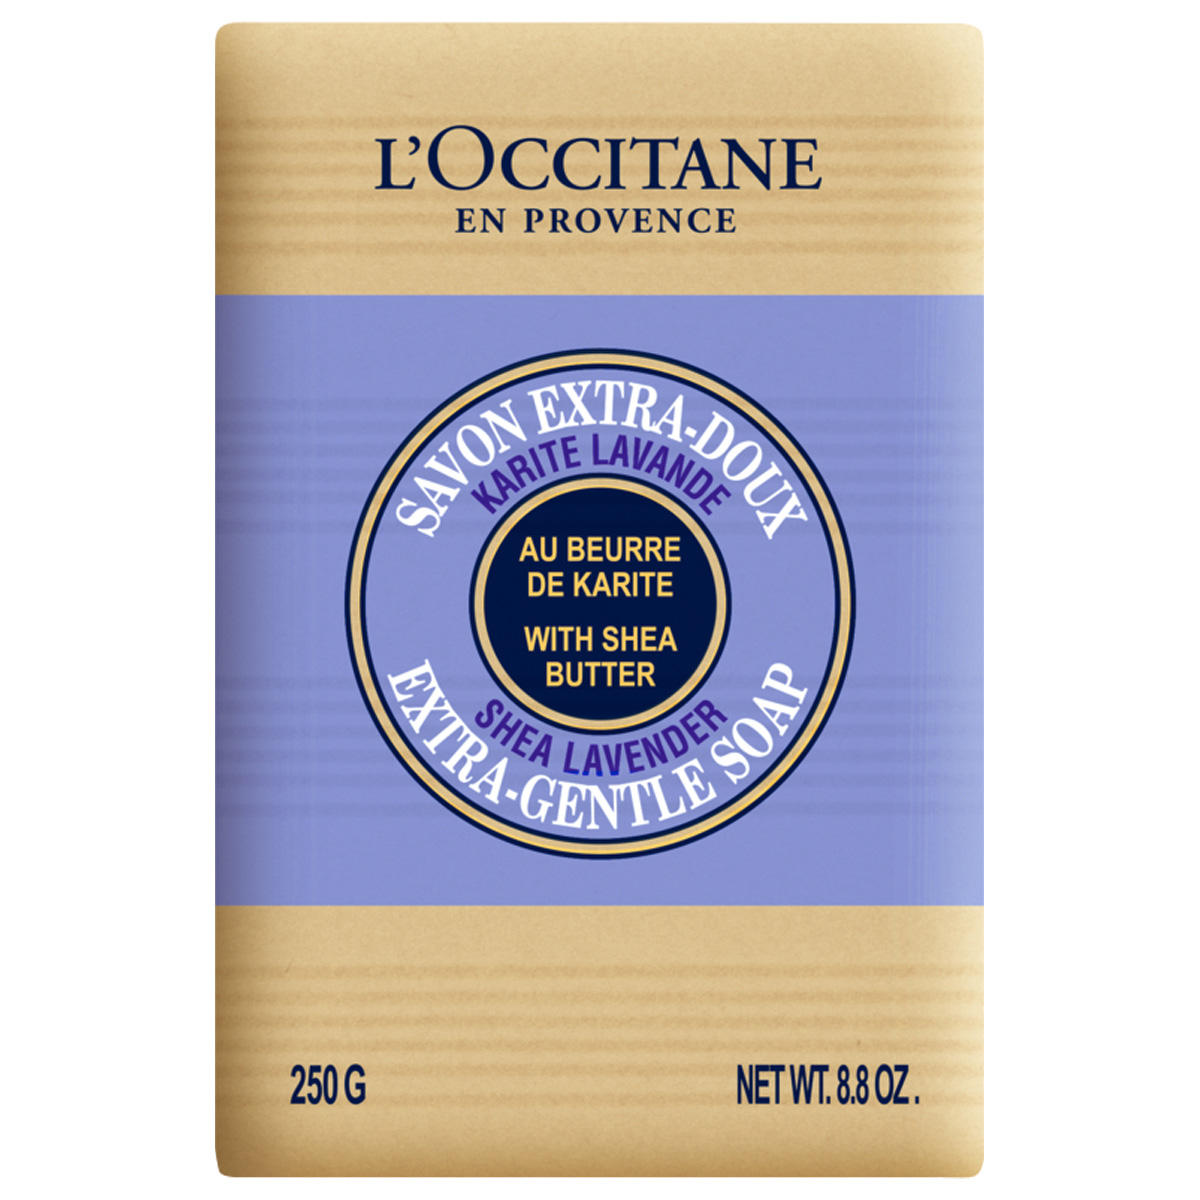 L'Occitane Karité Zeep lavendel 250 g - 1